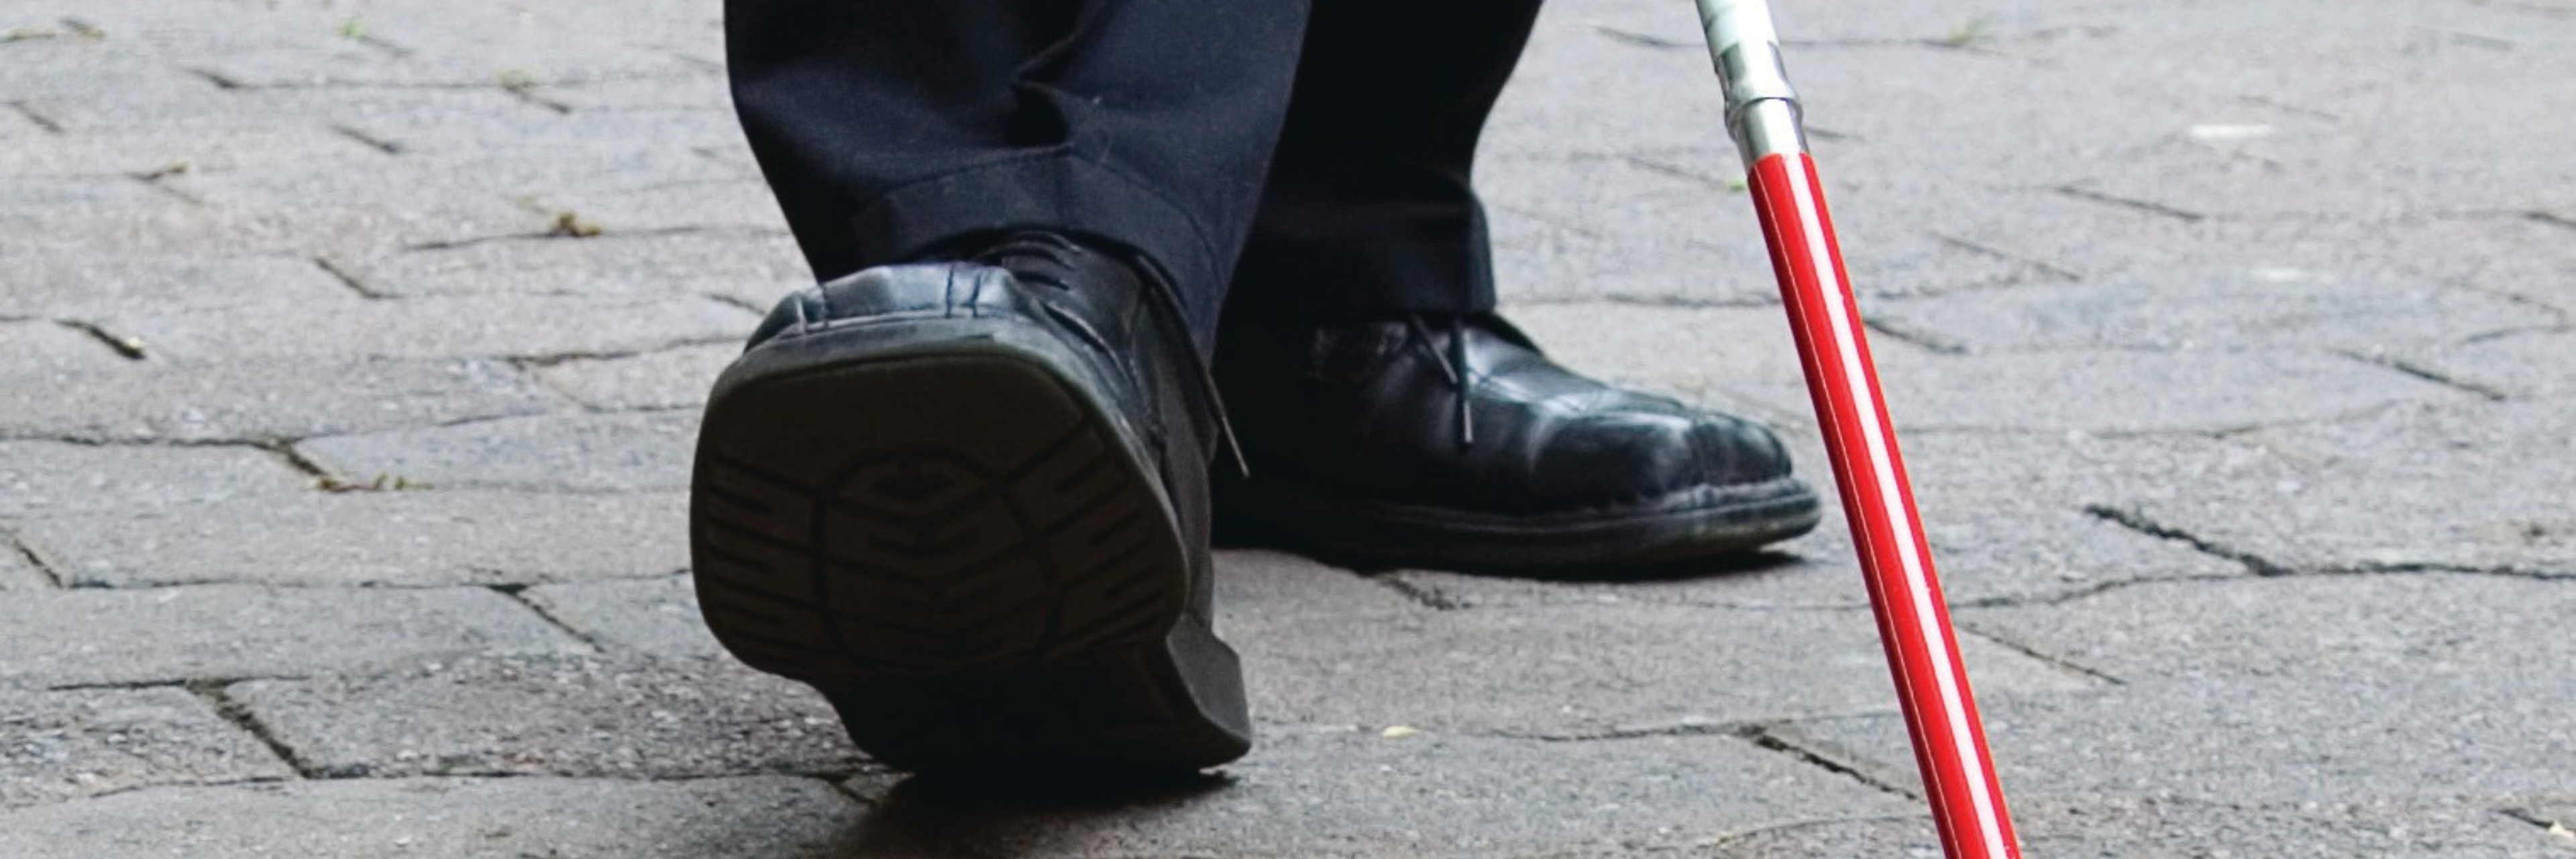 Close-up van schoenen van een man met een wandelstok voor blinden